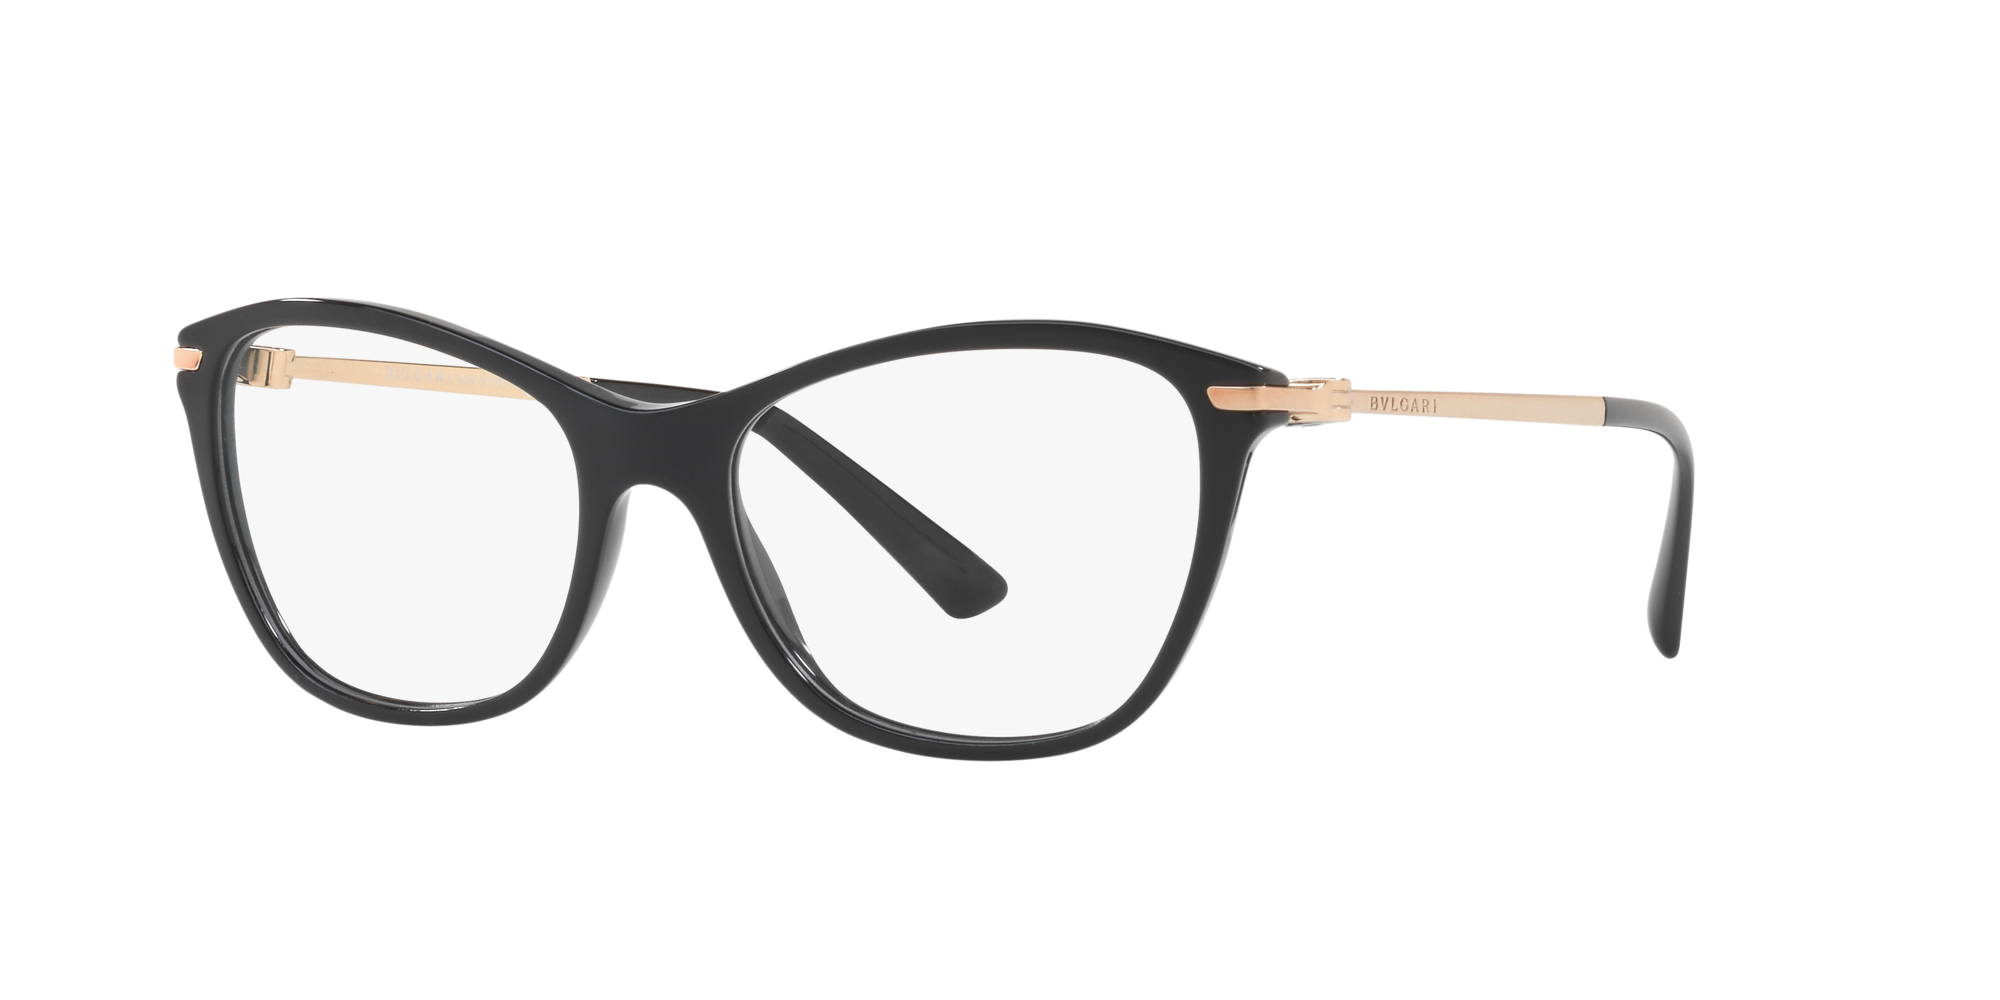 bvlgari women's eyeglasses